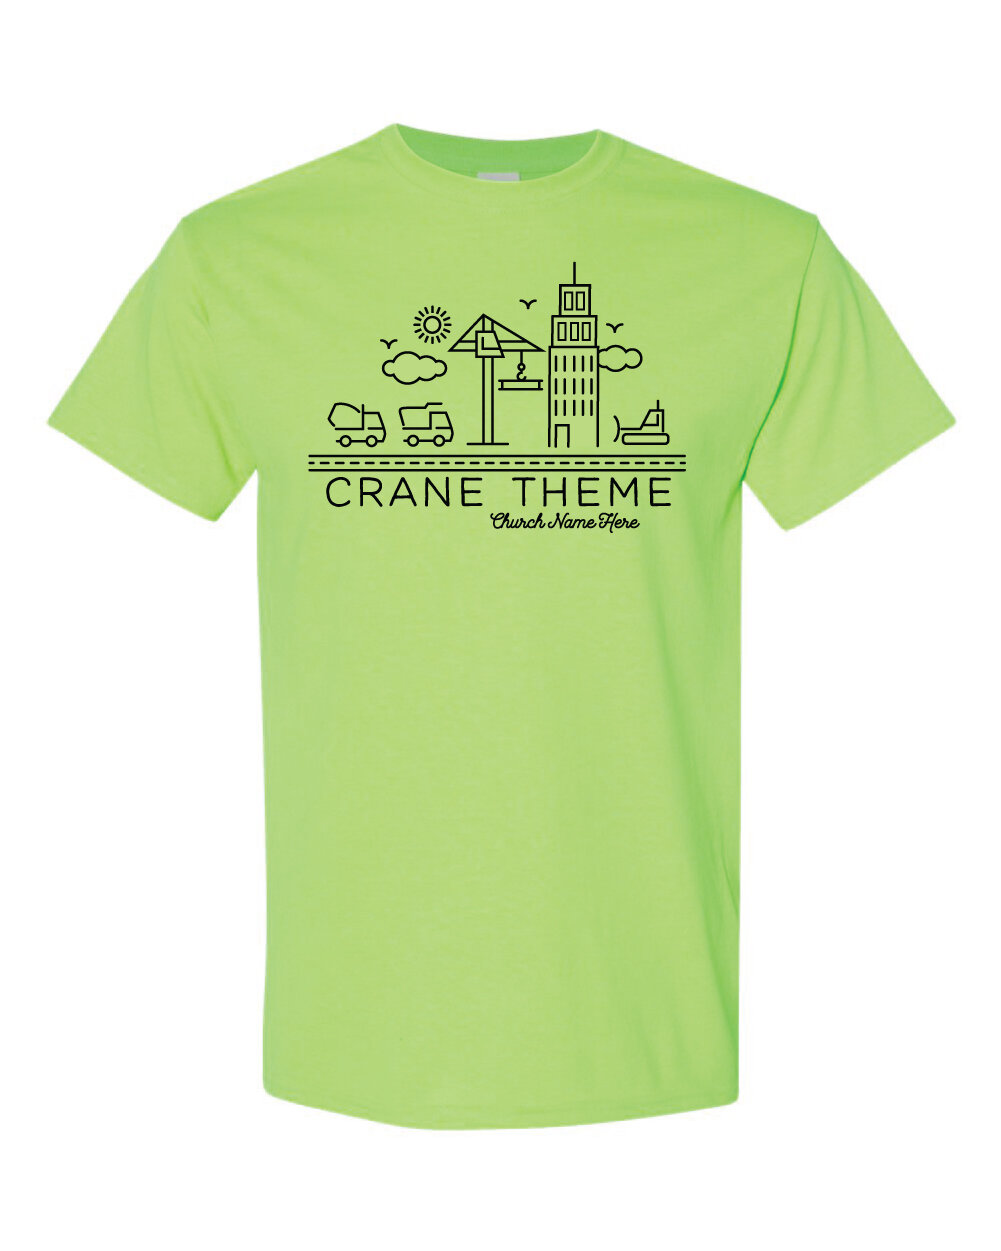 Crane 3-02.jpg